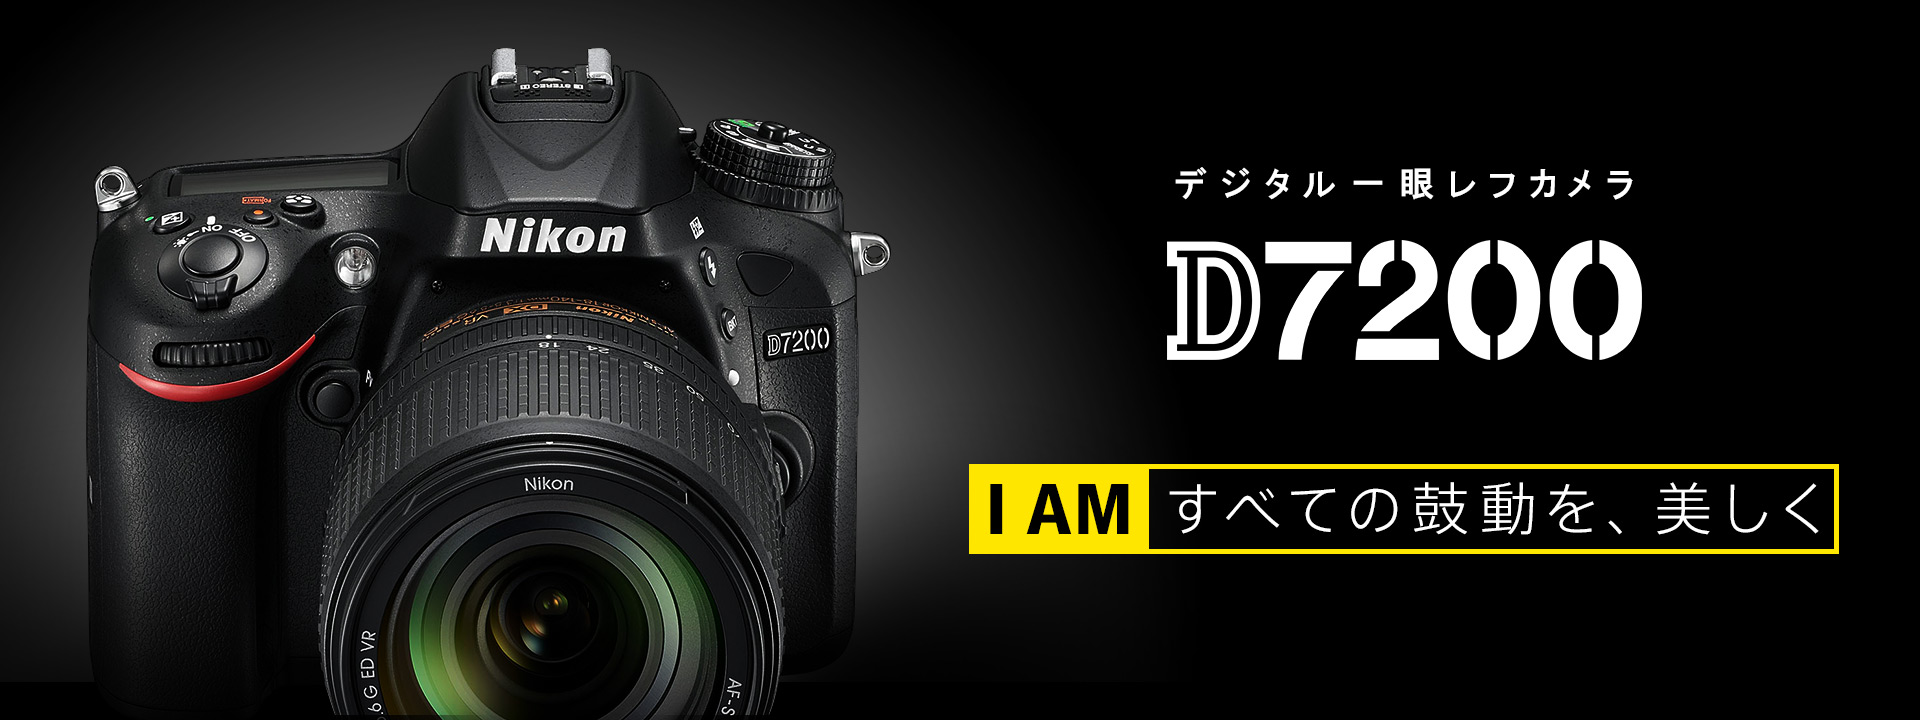 D7200 - 概要 | 一眼レフカメラ | ニコンイメージング